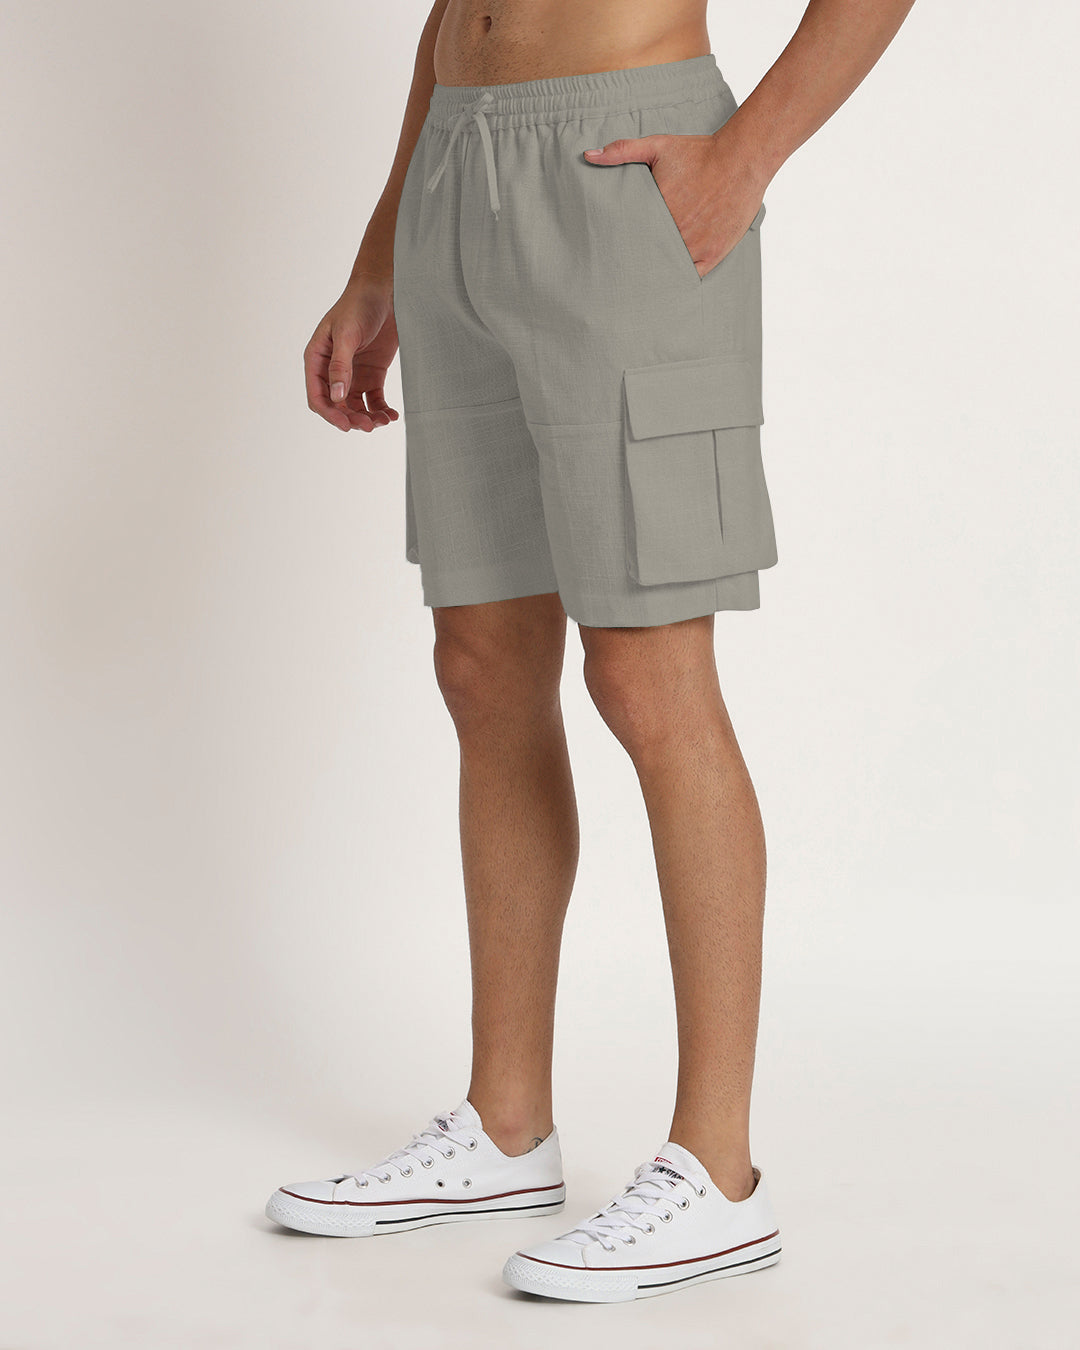 Combo : Slub Comfort Cargo Shorts Black & Grey Men's Shorts